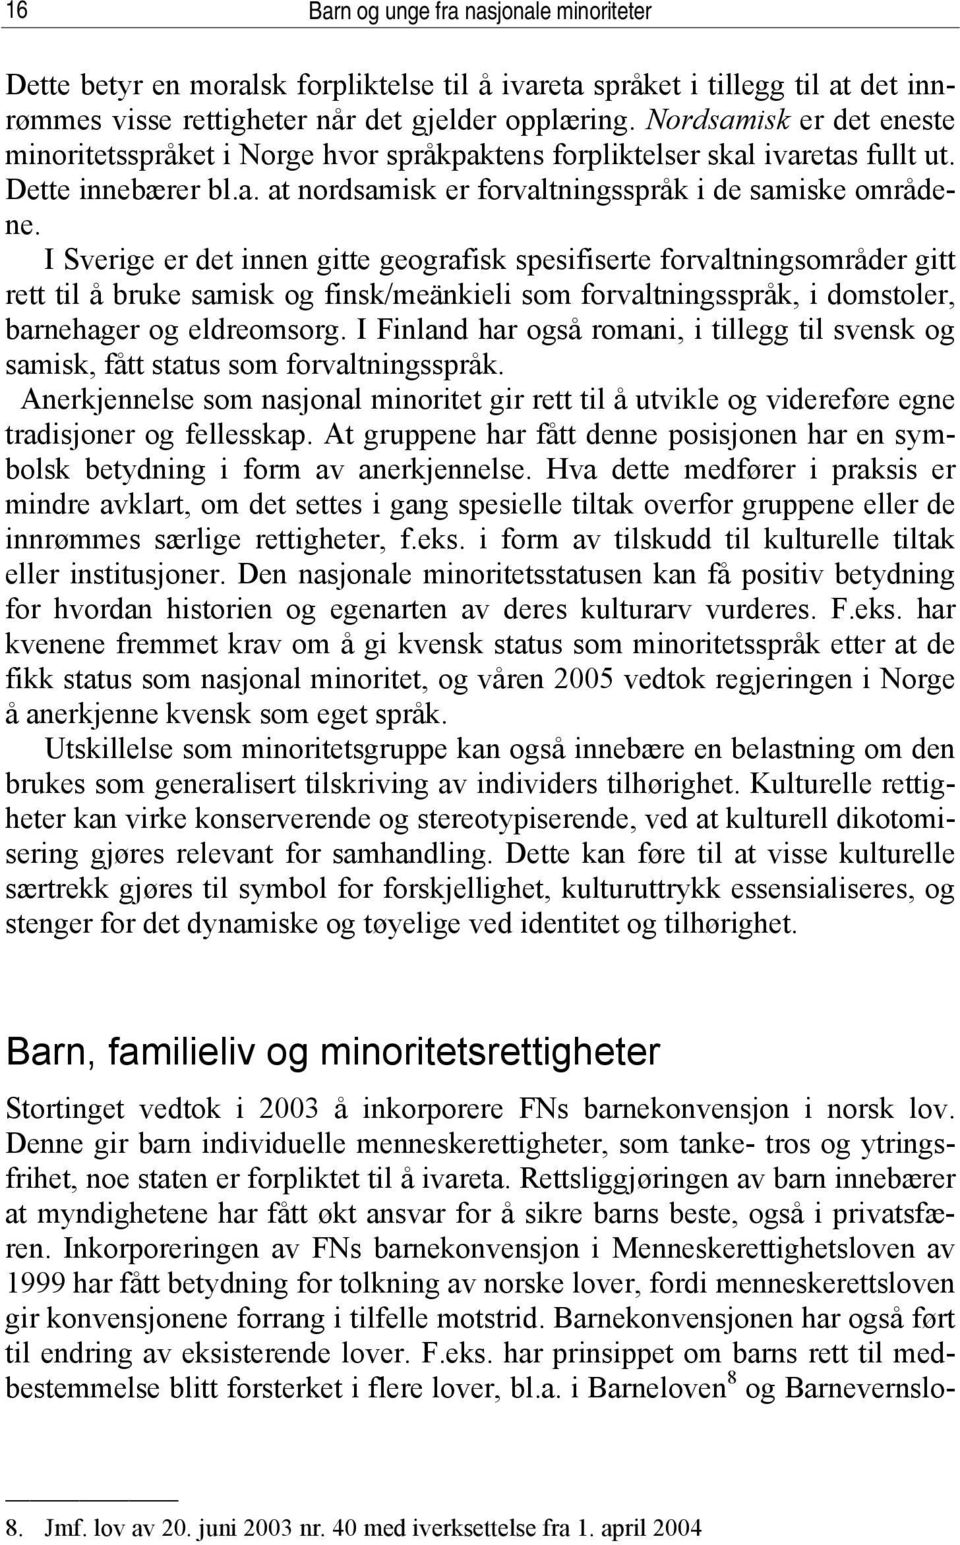 I Sverige er det innen gitte geografisk spesifiserte forvaltningsområder gitt rett til å bruke samisk og finsk/meänkieli som forvaltningsspråk, i domstoler, barnehager og eldreomsorg.